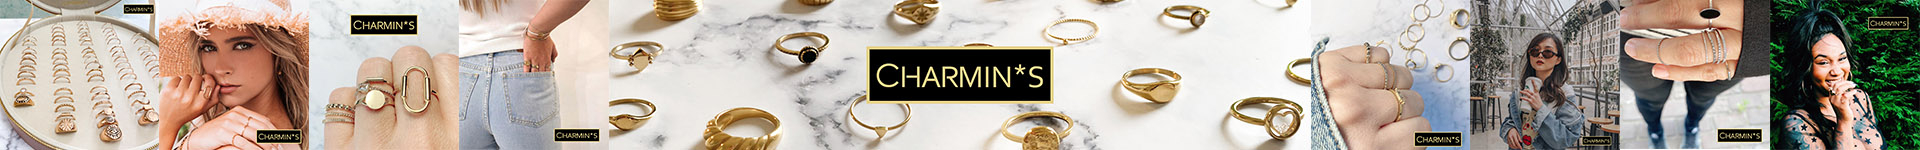 Charmin's Ringens achtergrond